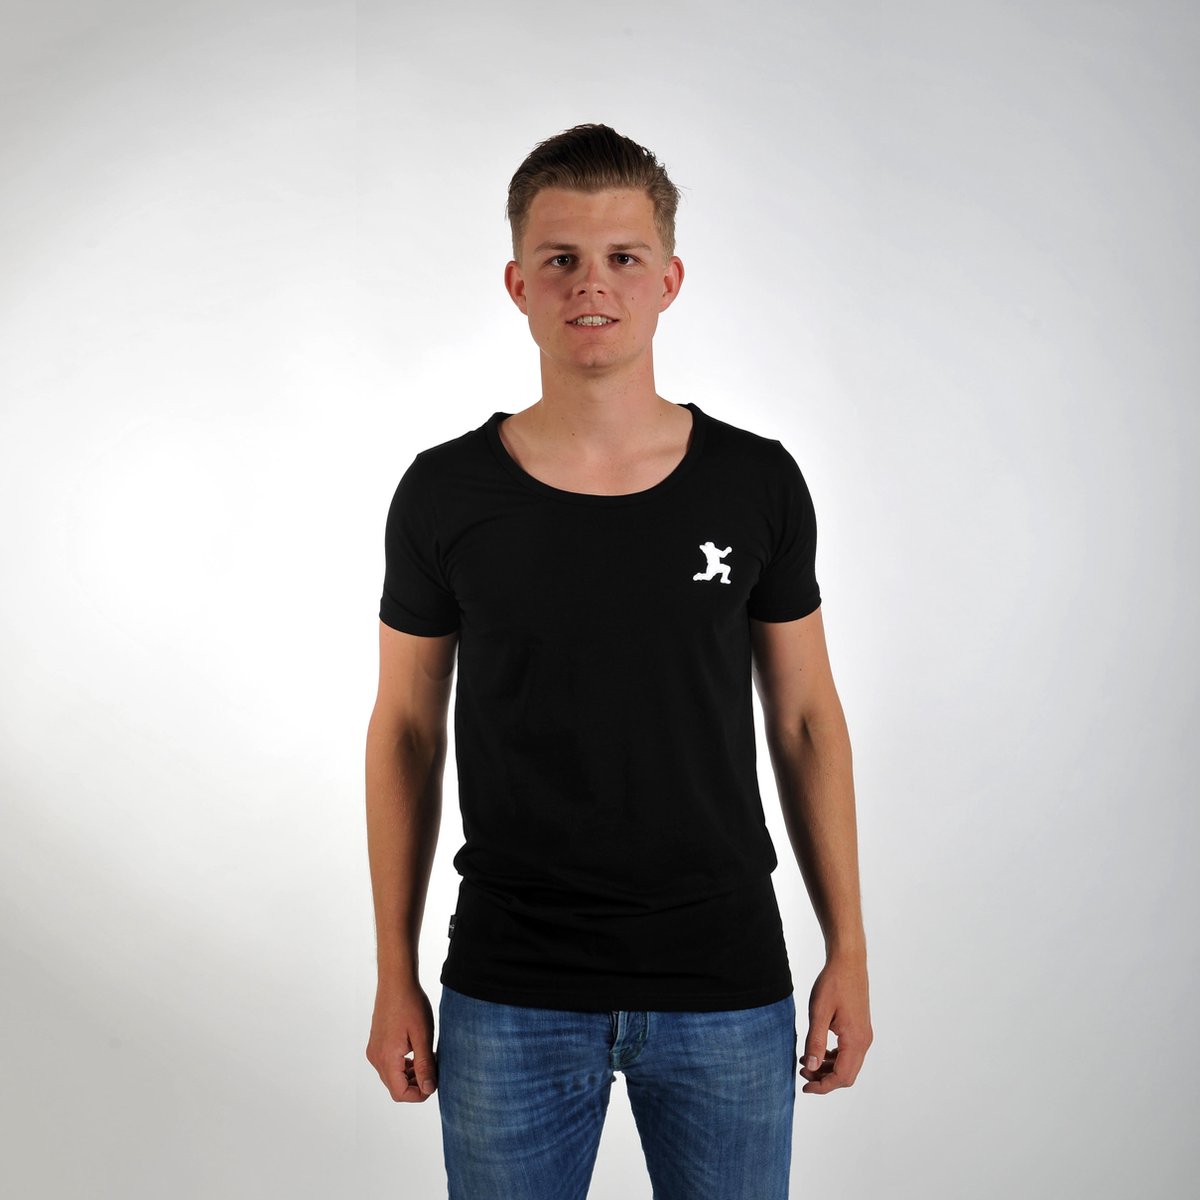 Imperatore - Andy van der Meijde t-shirt - zwart - wit logo - maat S